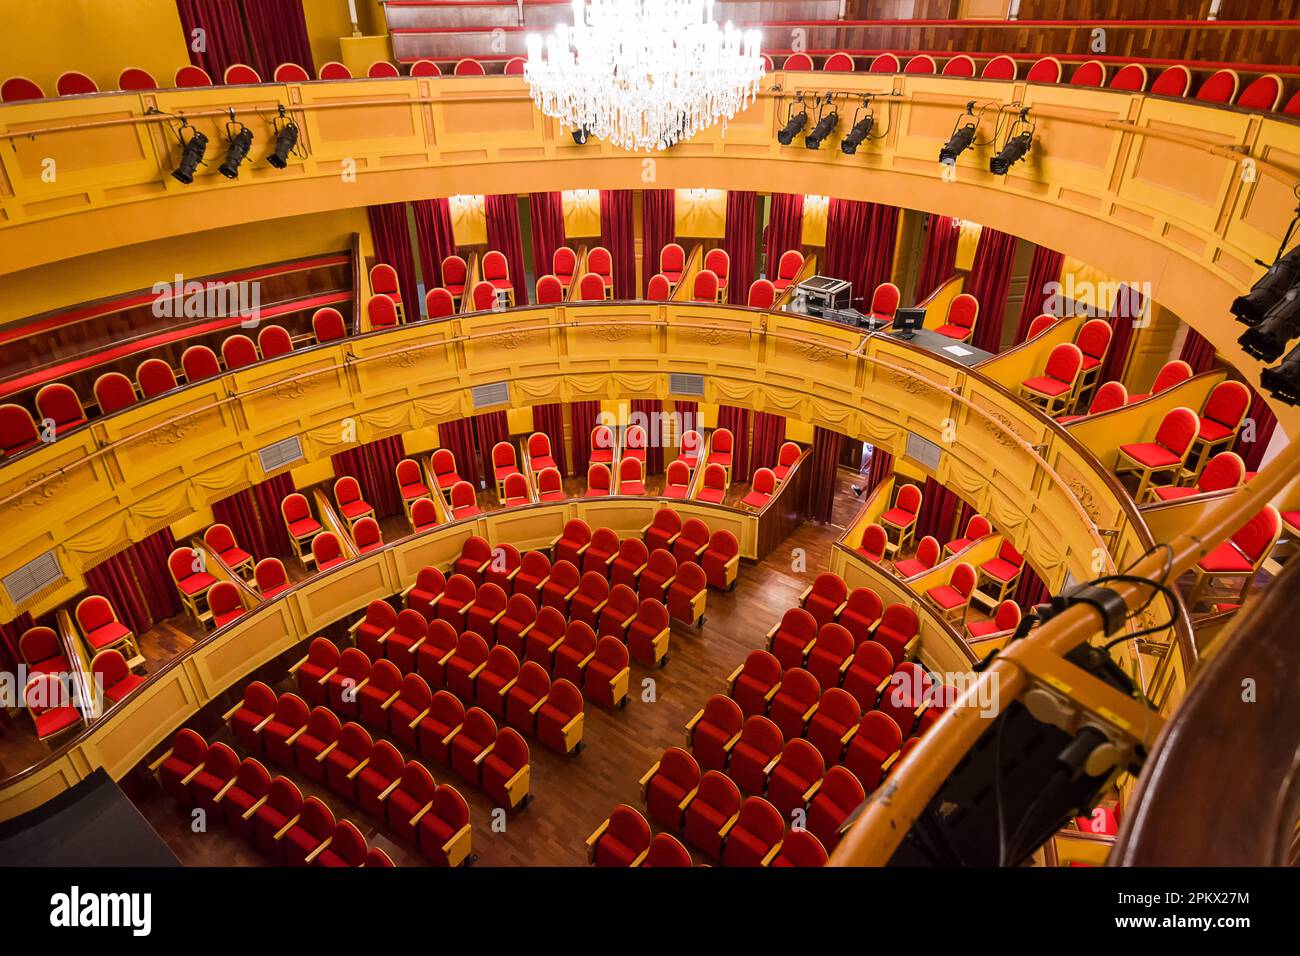 Almagro, Spanien - 23. Juni 2022: Inneneinrichtung mit Bühne und Ständen des Stadttheaters von Almagro ohne Menschen Stockfoto